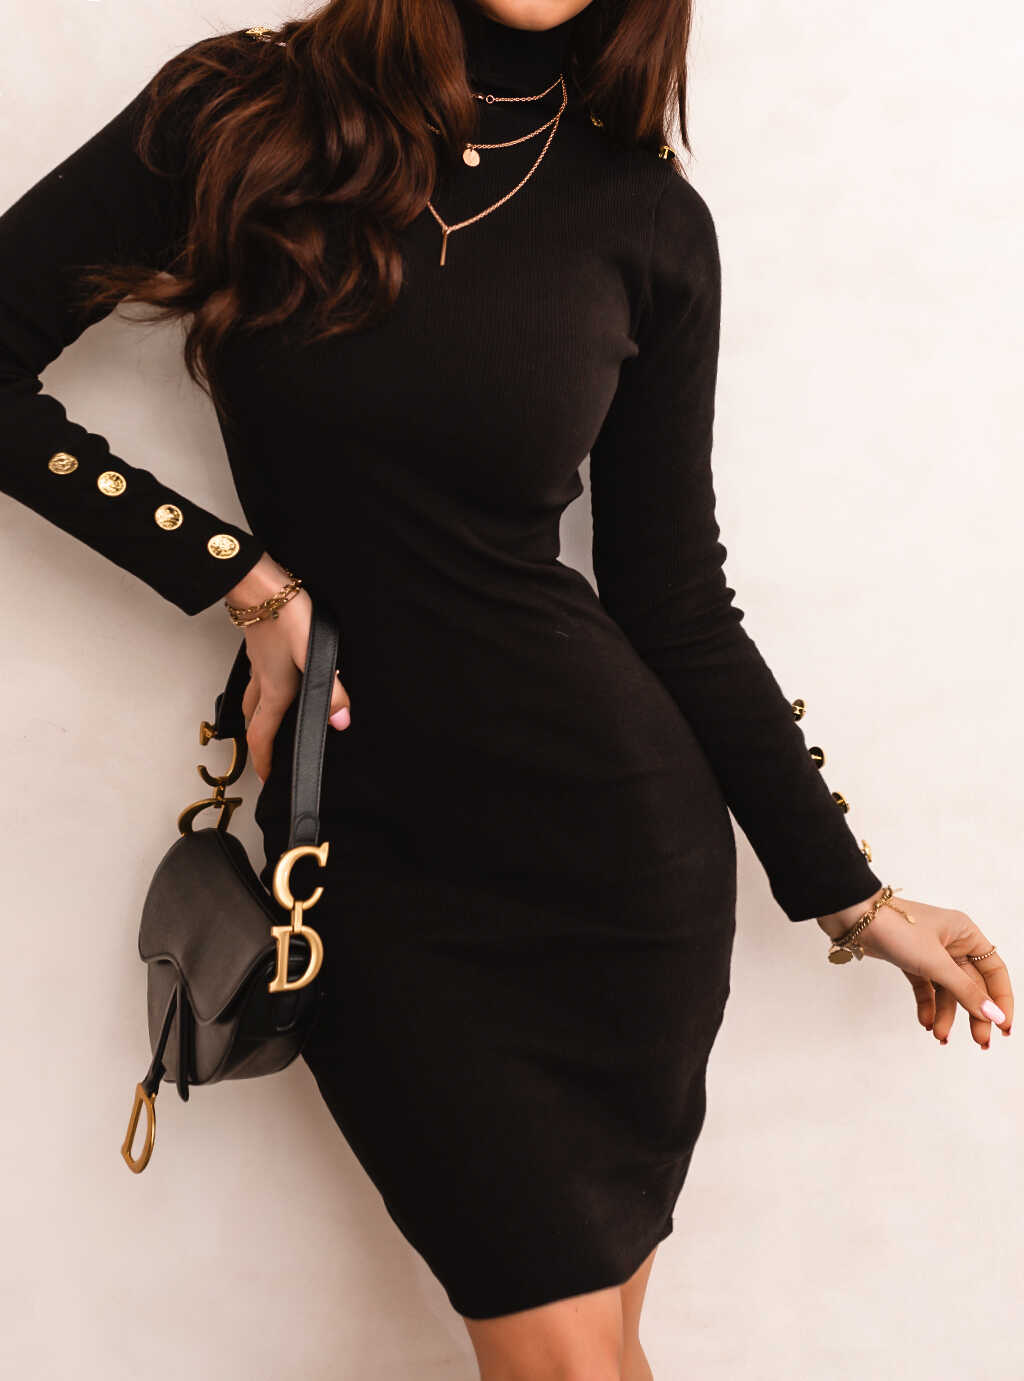 Дамска рокля LORA  https://bvseductive.com/products/womans-s-dresses-lora  черна рокля в миди дължина изработена от мека материя в изчистен дизайн вталена кройка, подчертаваща извивките на тялото интересно предложение за ежедневието .